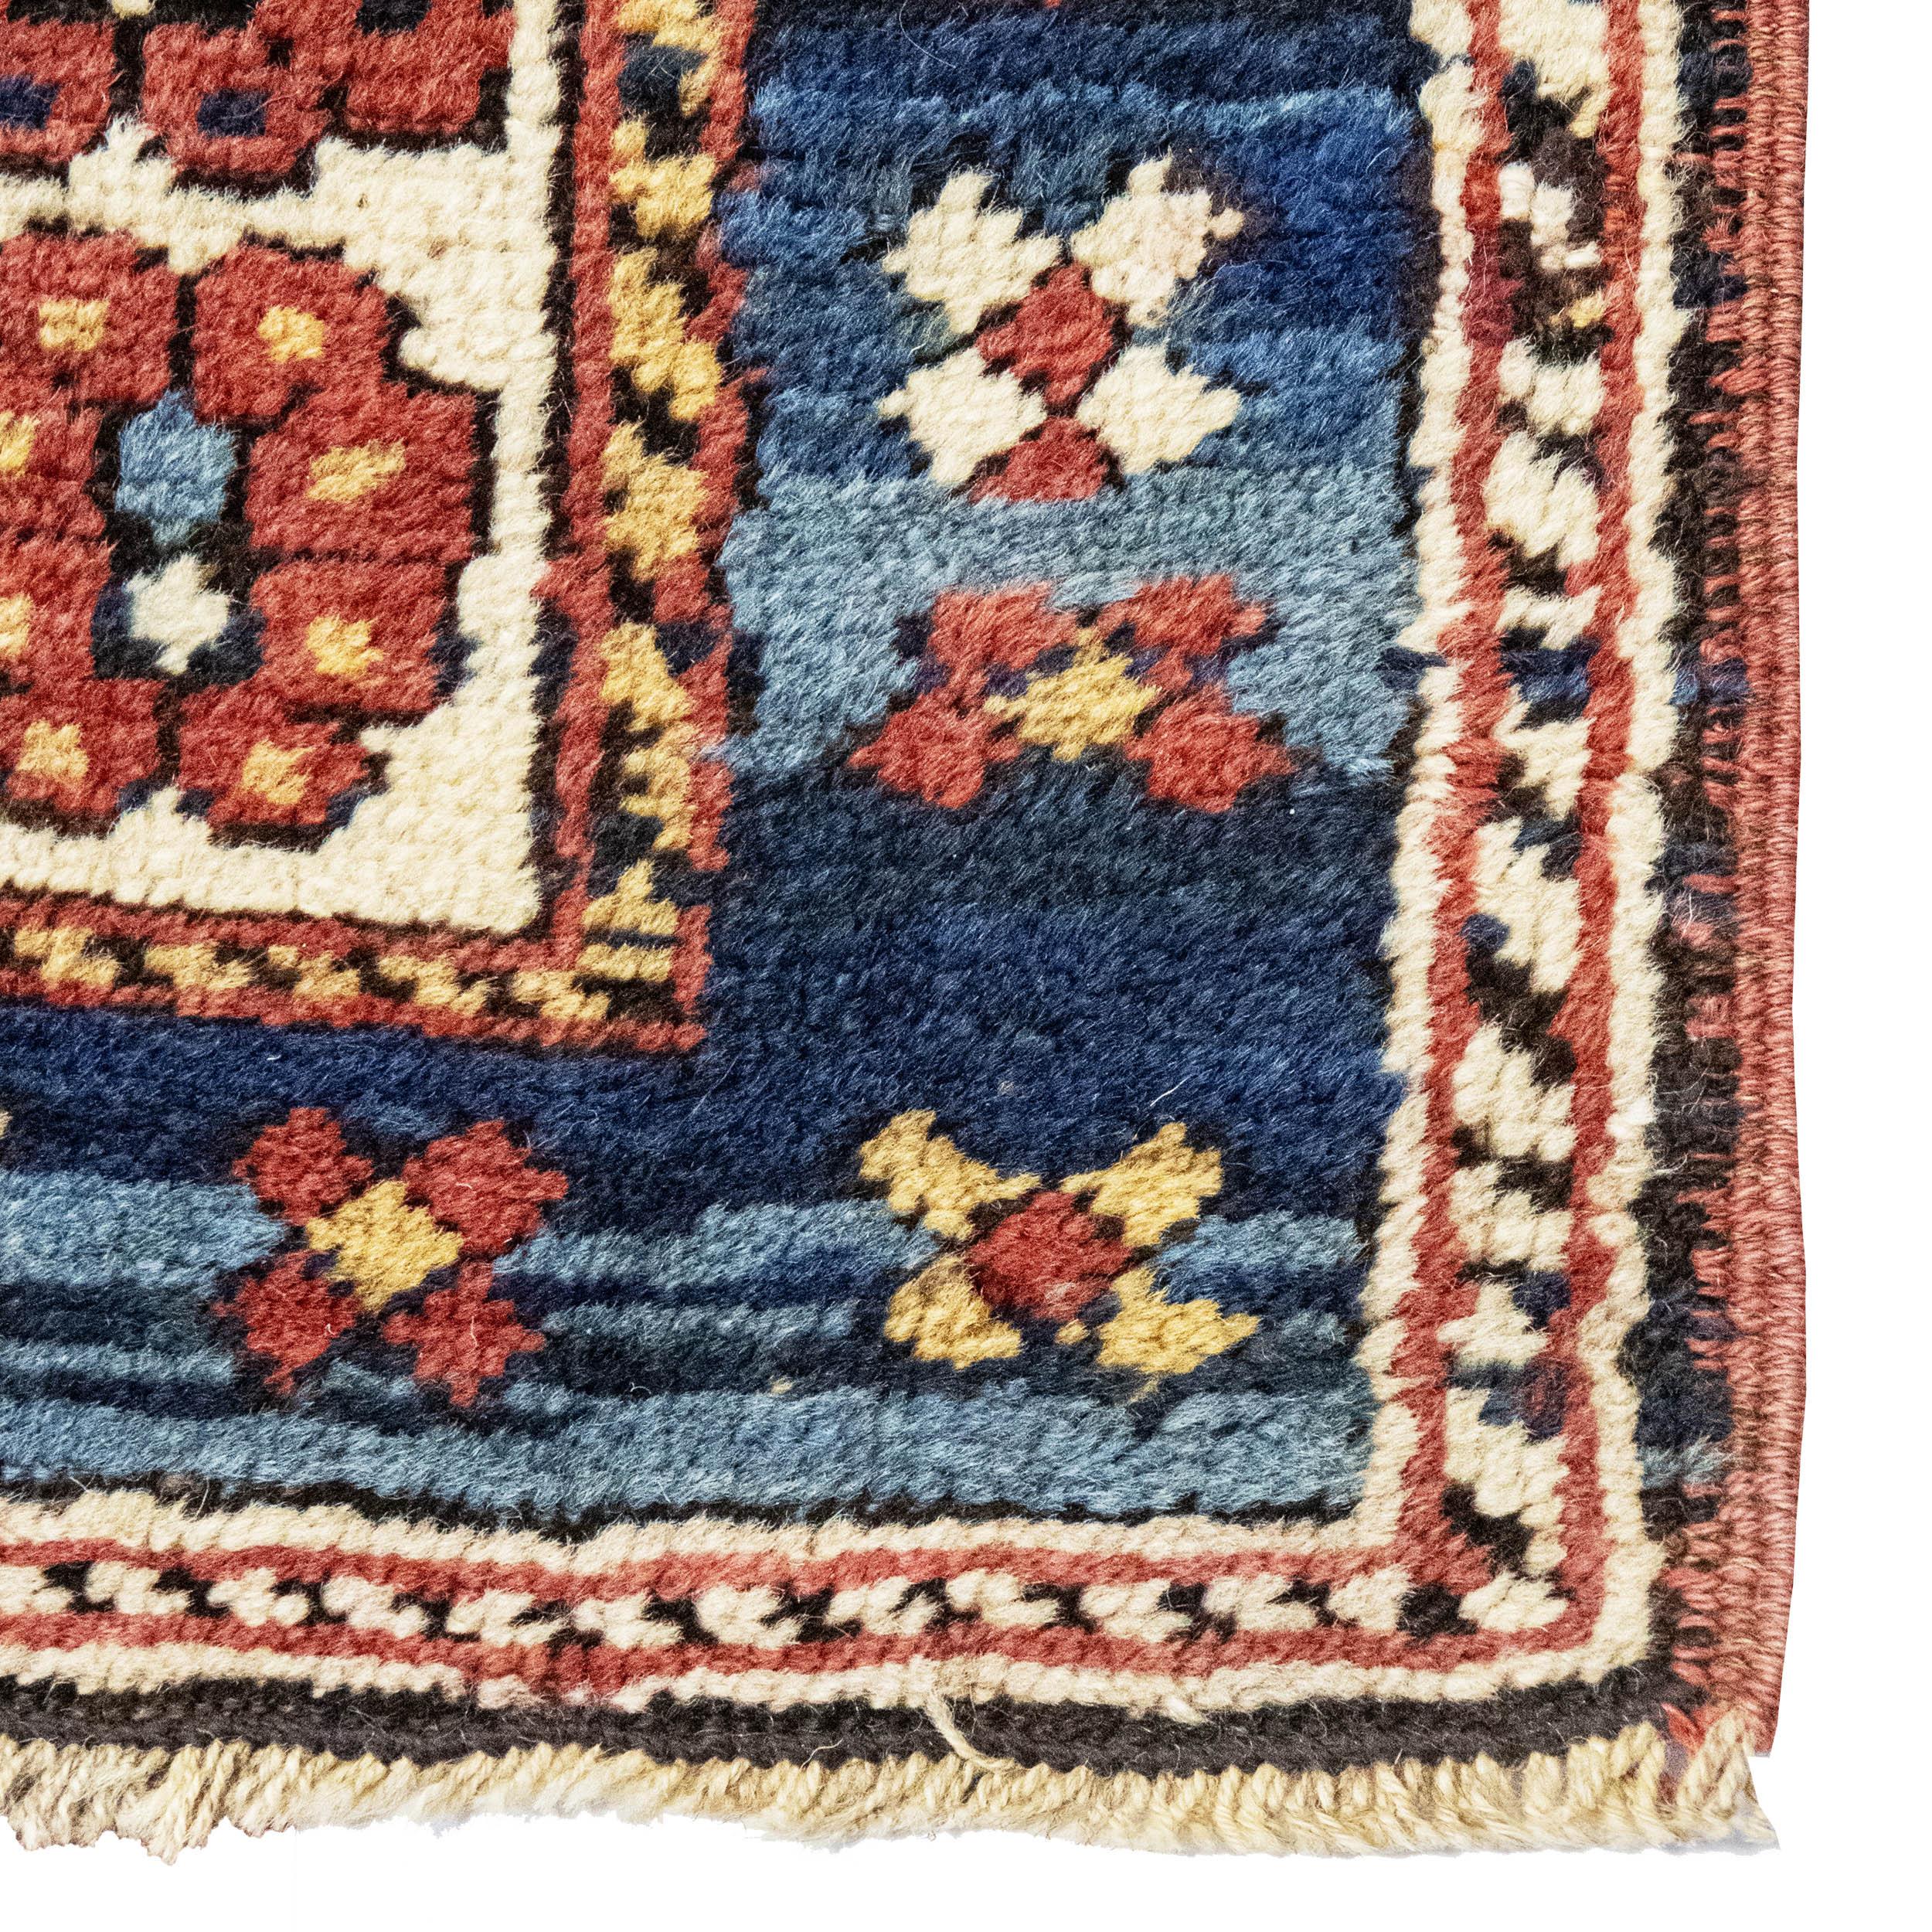 Le chemin de table Kazak est un textile fin et captivant originaire de la région de Kazak dans le Caucase. Tissé à la main avec de la laine de première qualité et des teintures naturelles, ses dessins géométriques audacieux et ses motifs tribaux,